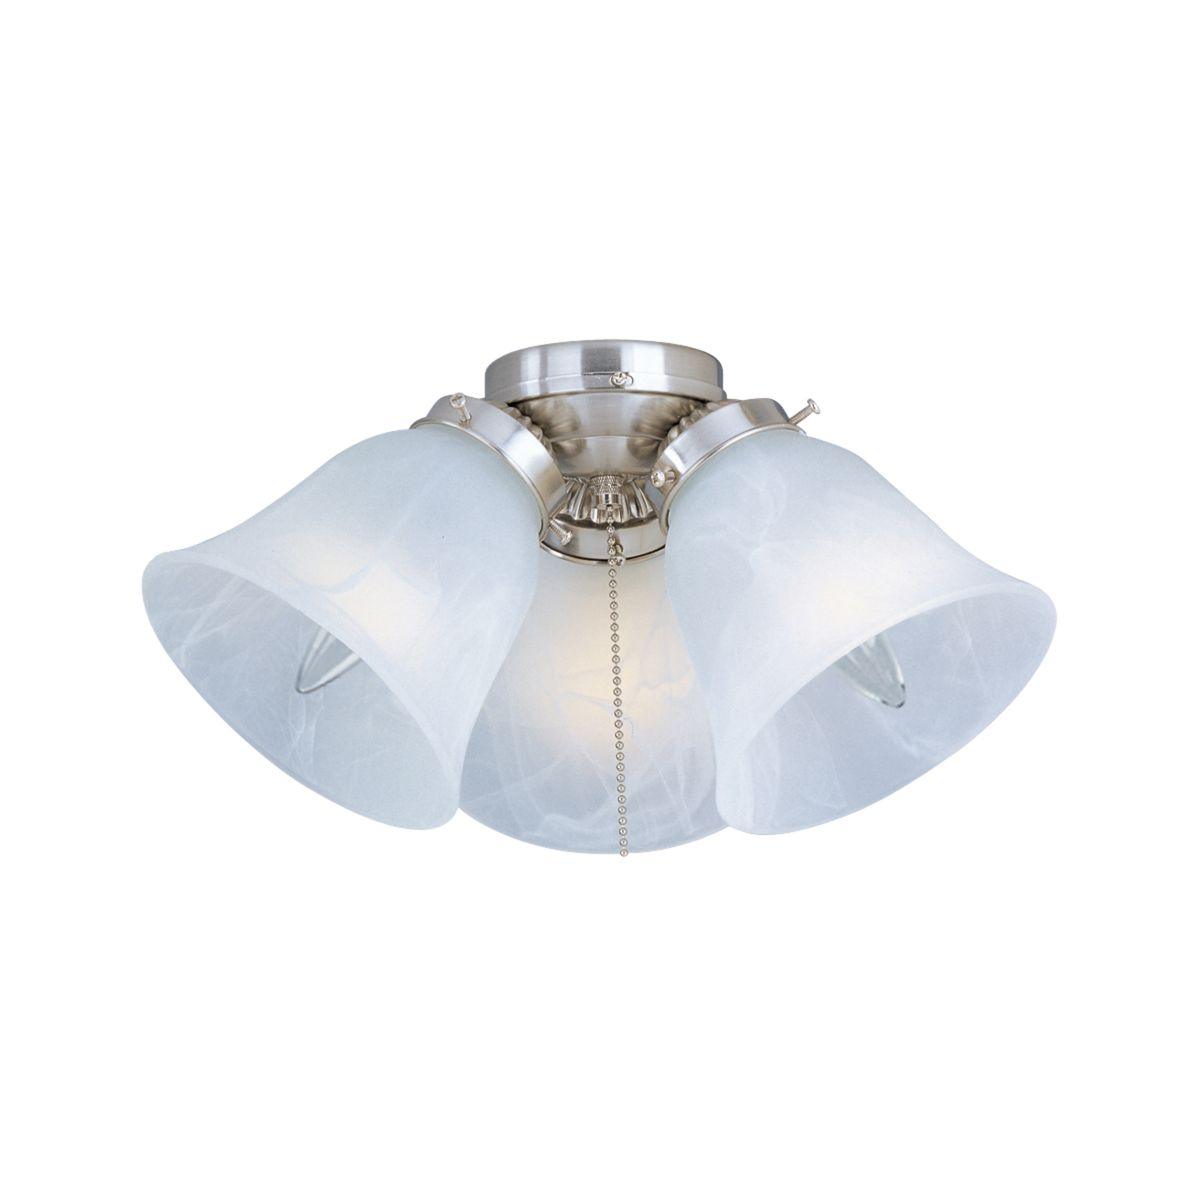 12 Inch 3 Light LED Ceiling Fan Light Kit